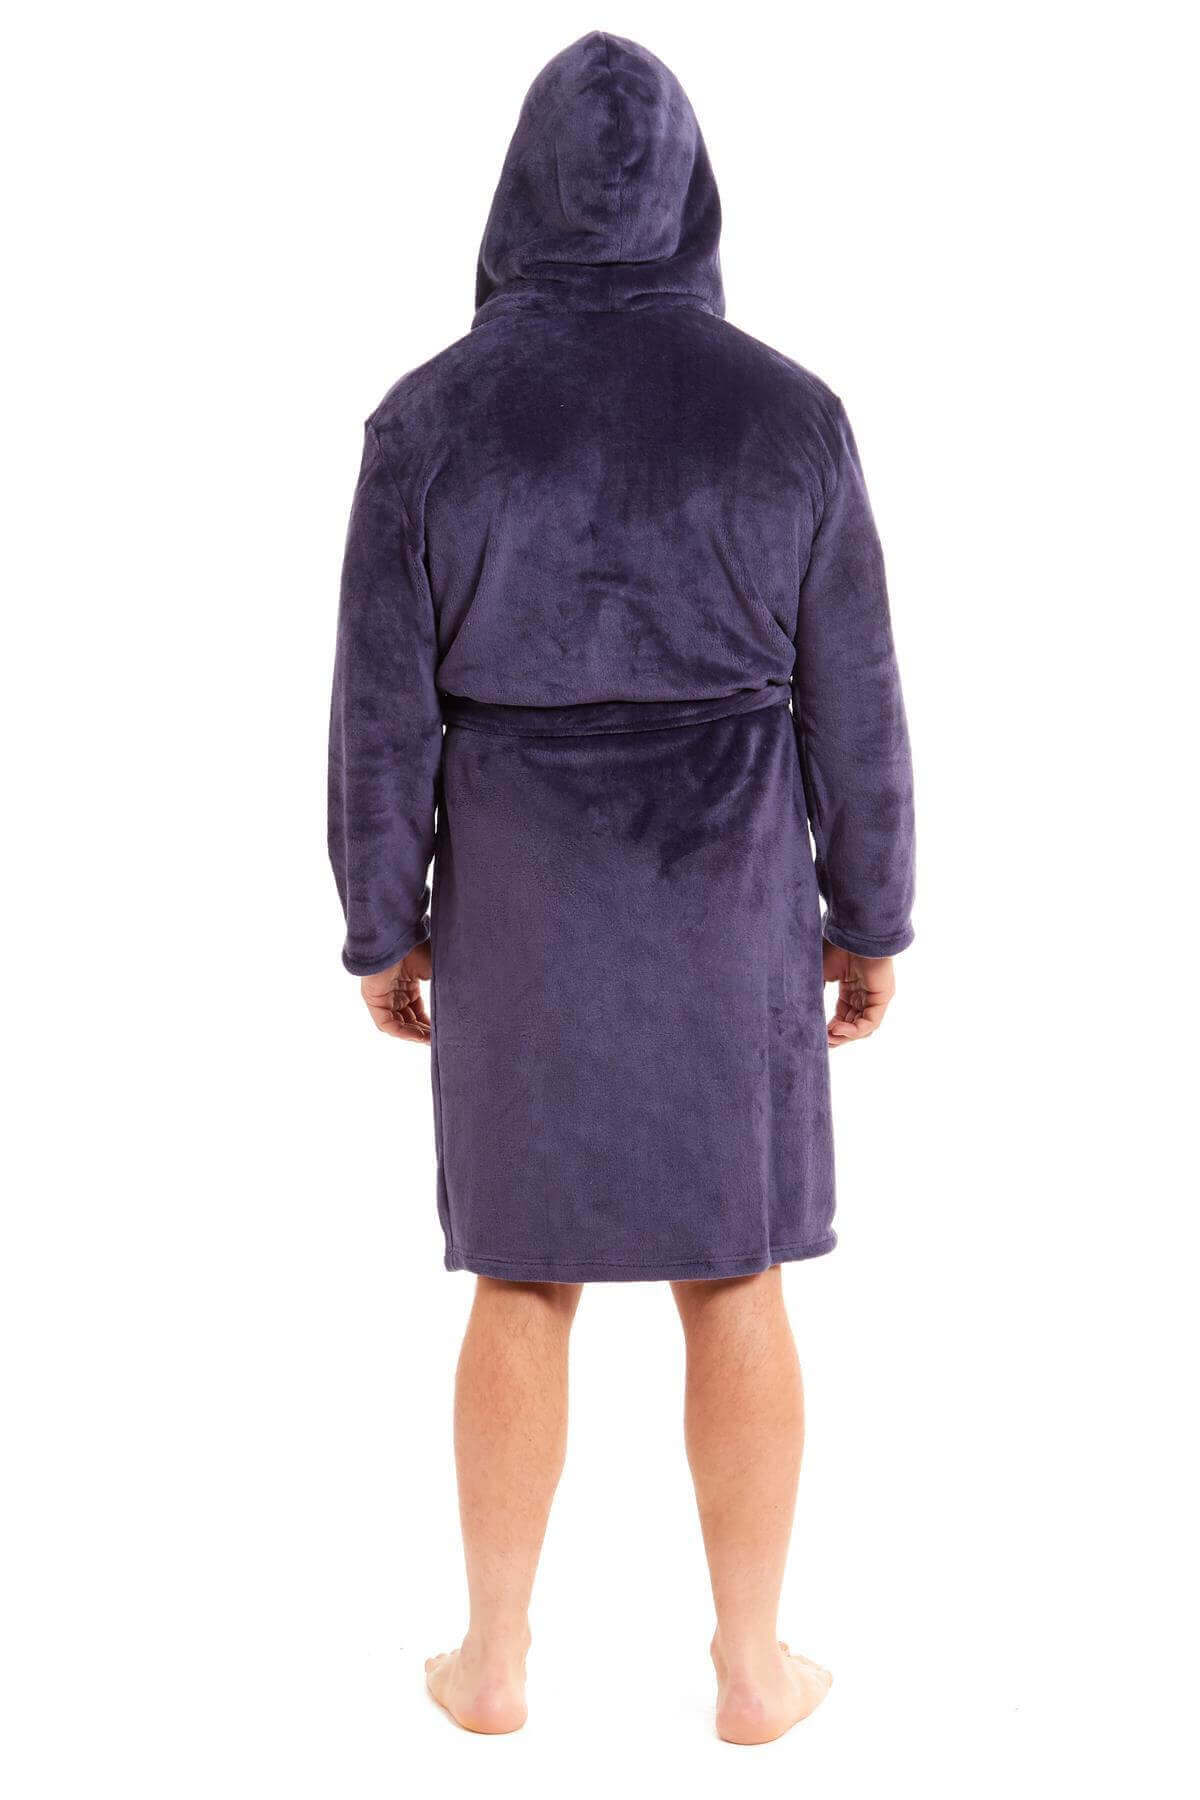 Men's Hooded Plush Flannel Dressing Gown. Buy now for £15.00. A Robe by Daisy Dreamer. black, blue, charcoal, dressing gown, flannel, fleece, grey, gym, hooded robe, hotel, loungewear, man, mens, navy, nightwear, plush fleece, robe, silver, sleepwear, spa